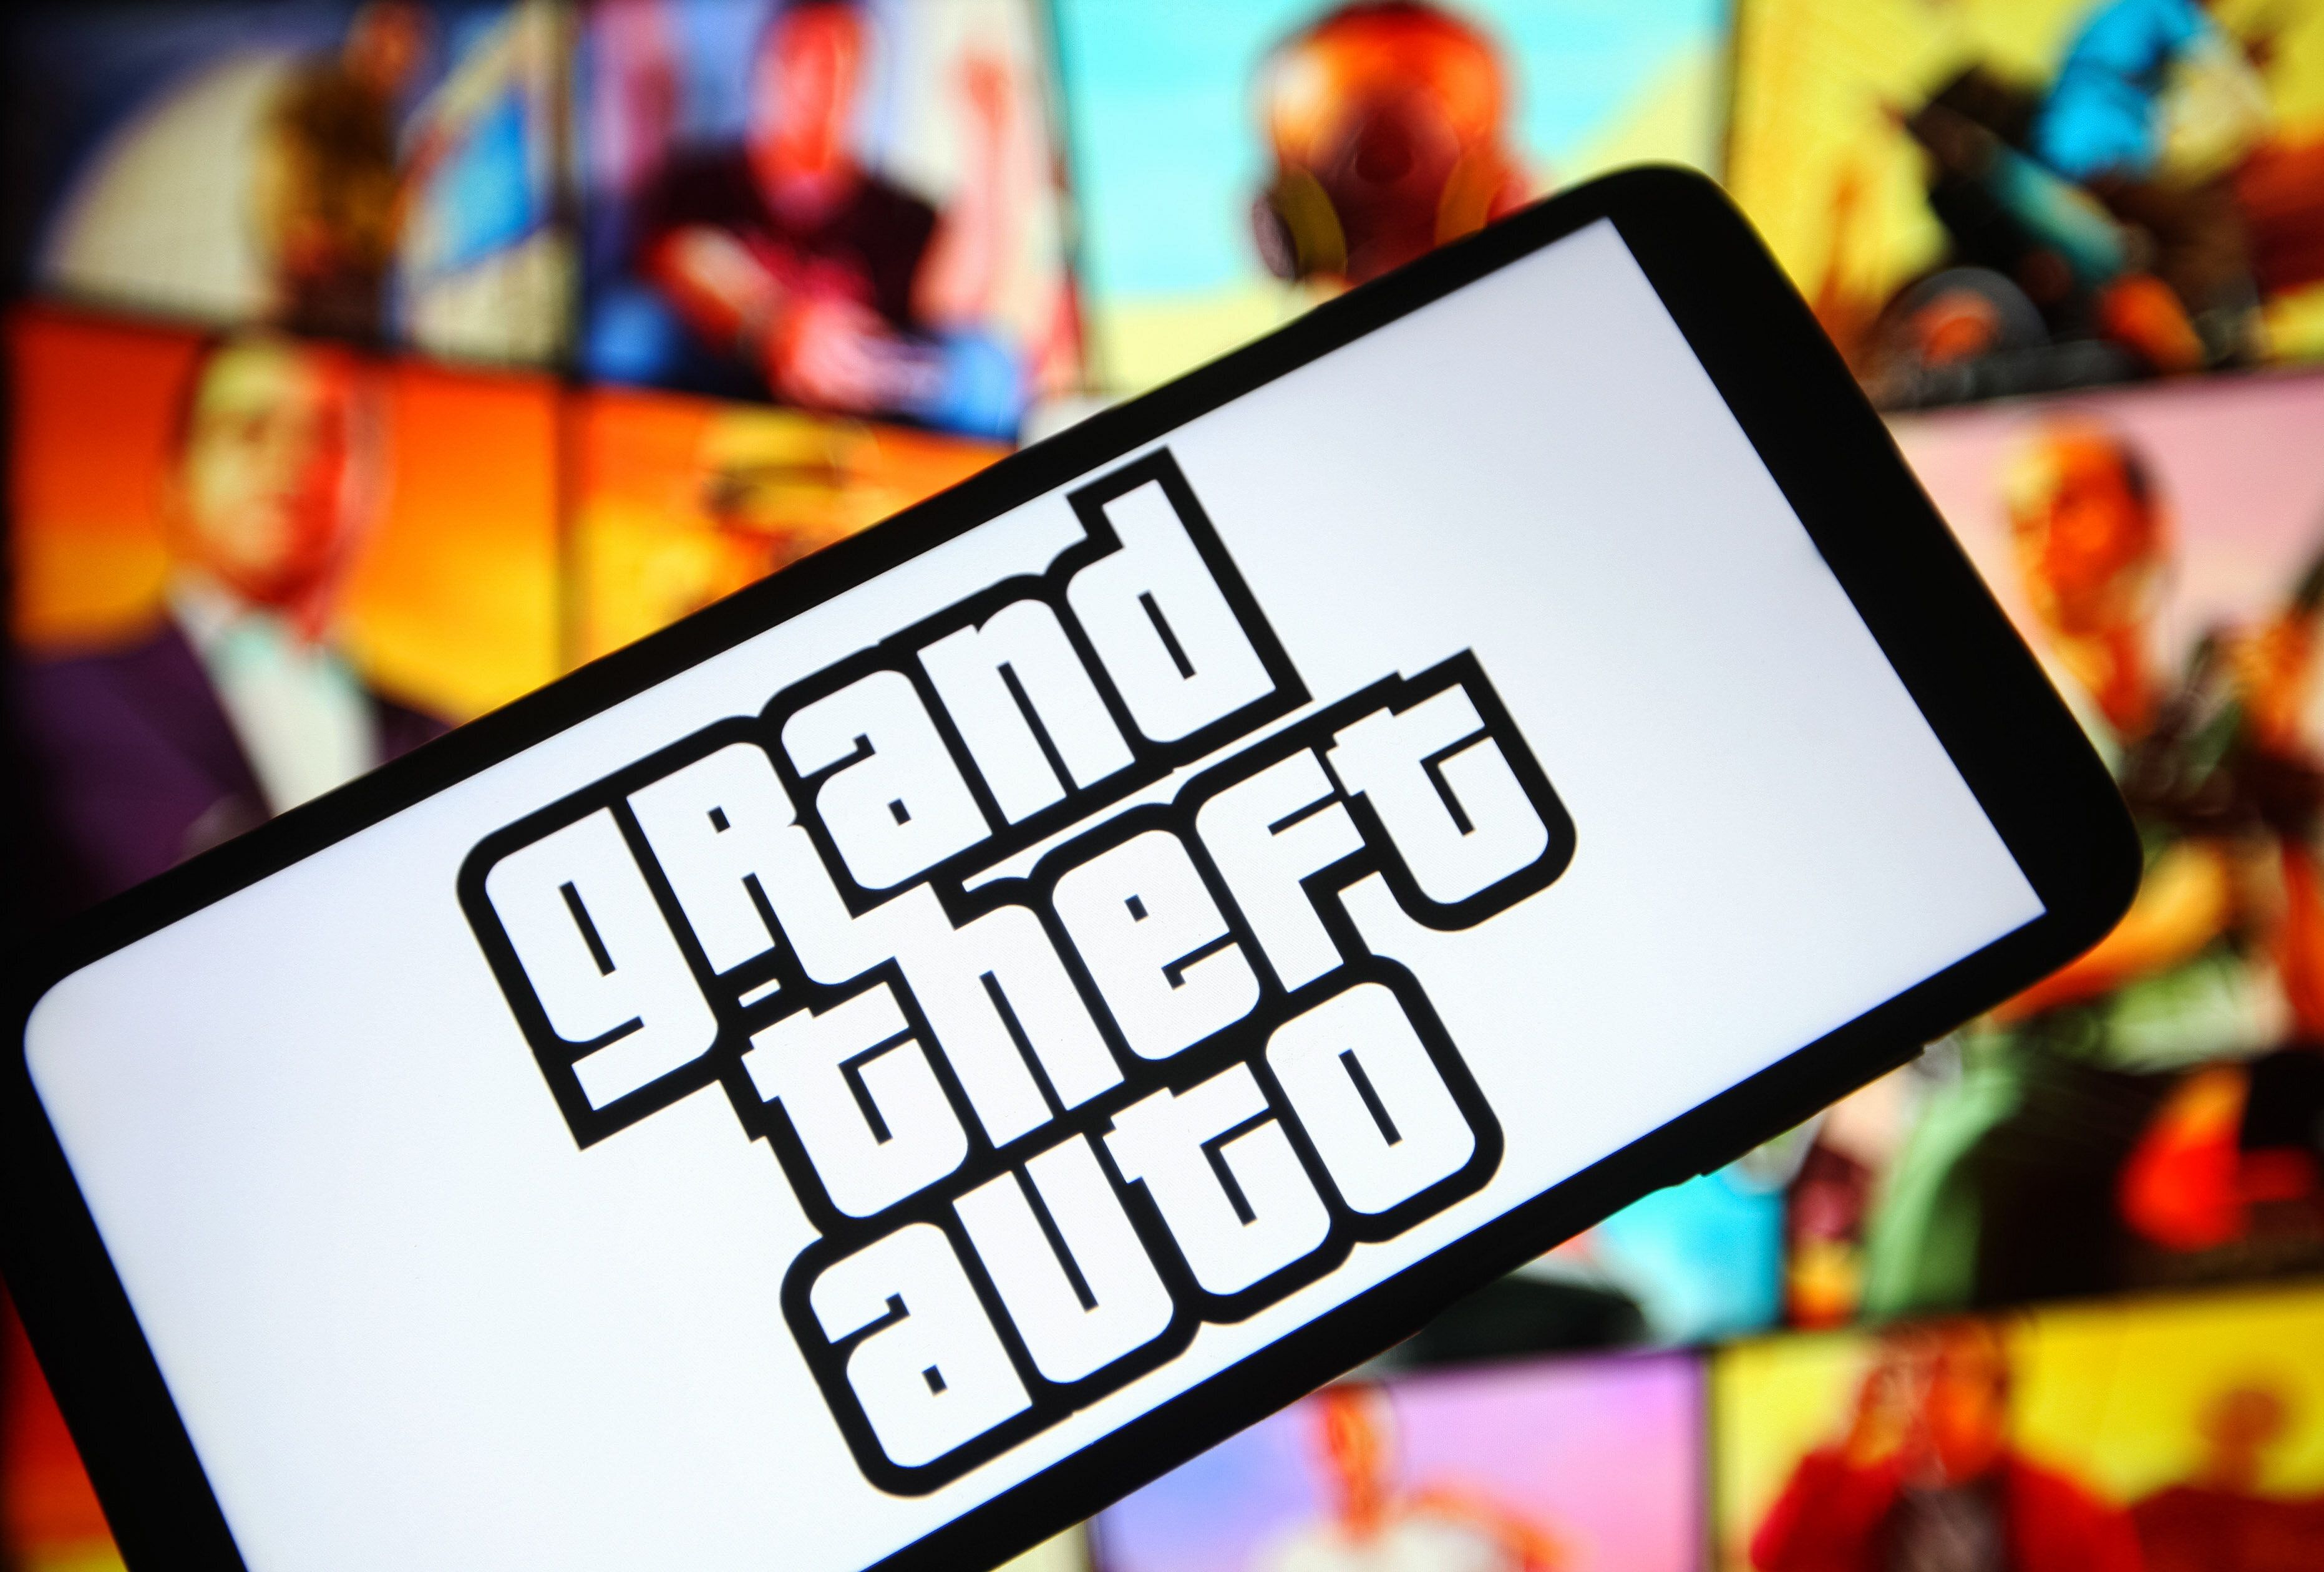 Il y aura bien un sixième jeu vidéo Grand Theft Auto annonce son éditeur Rockstar